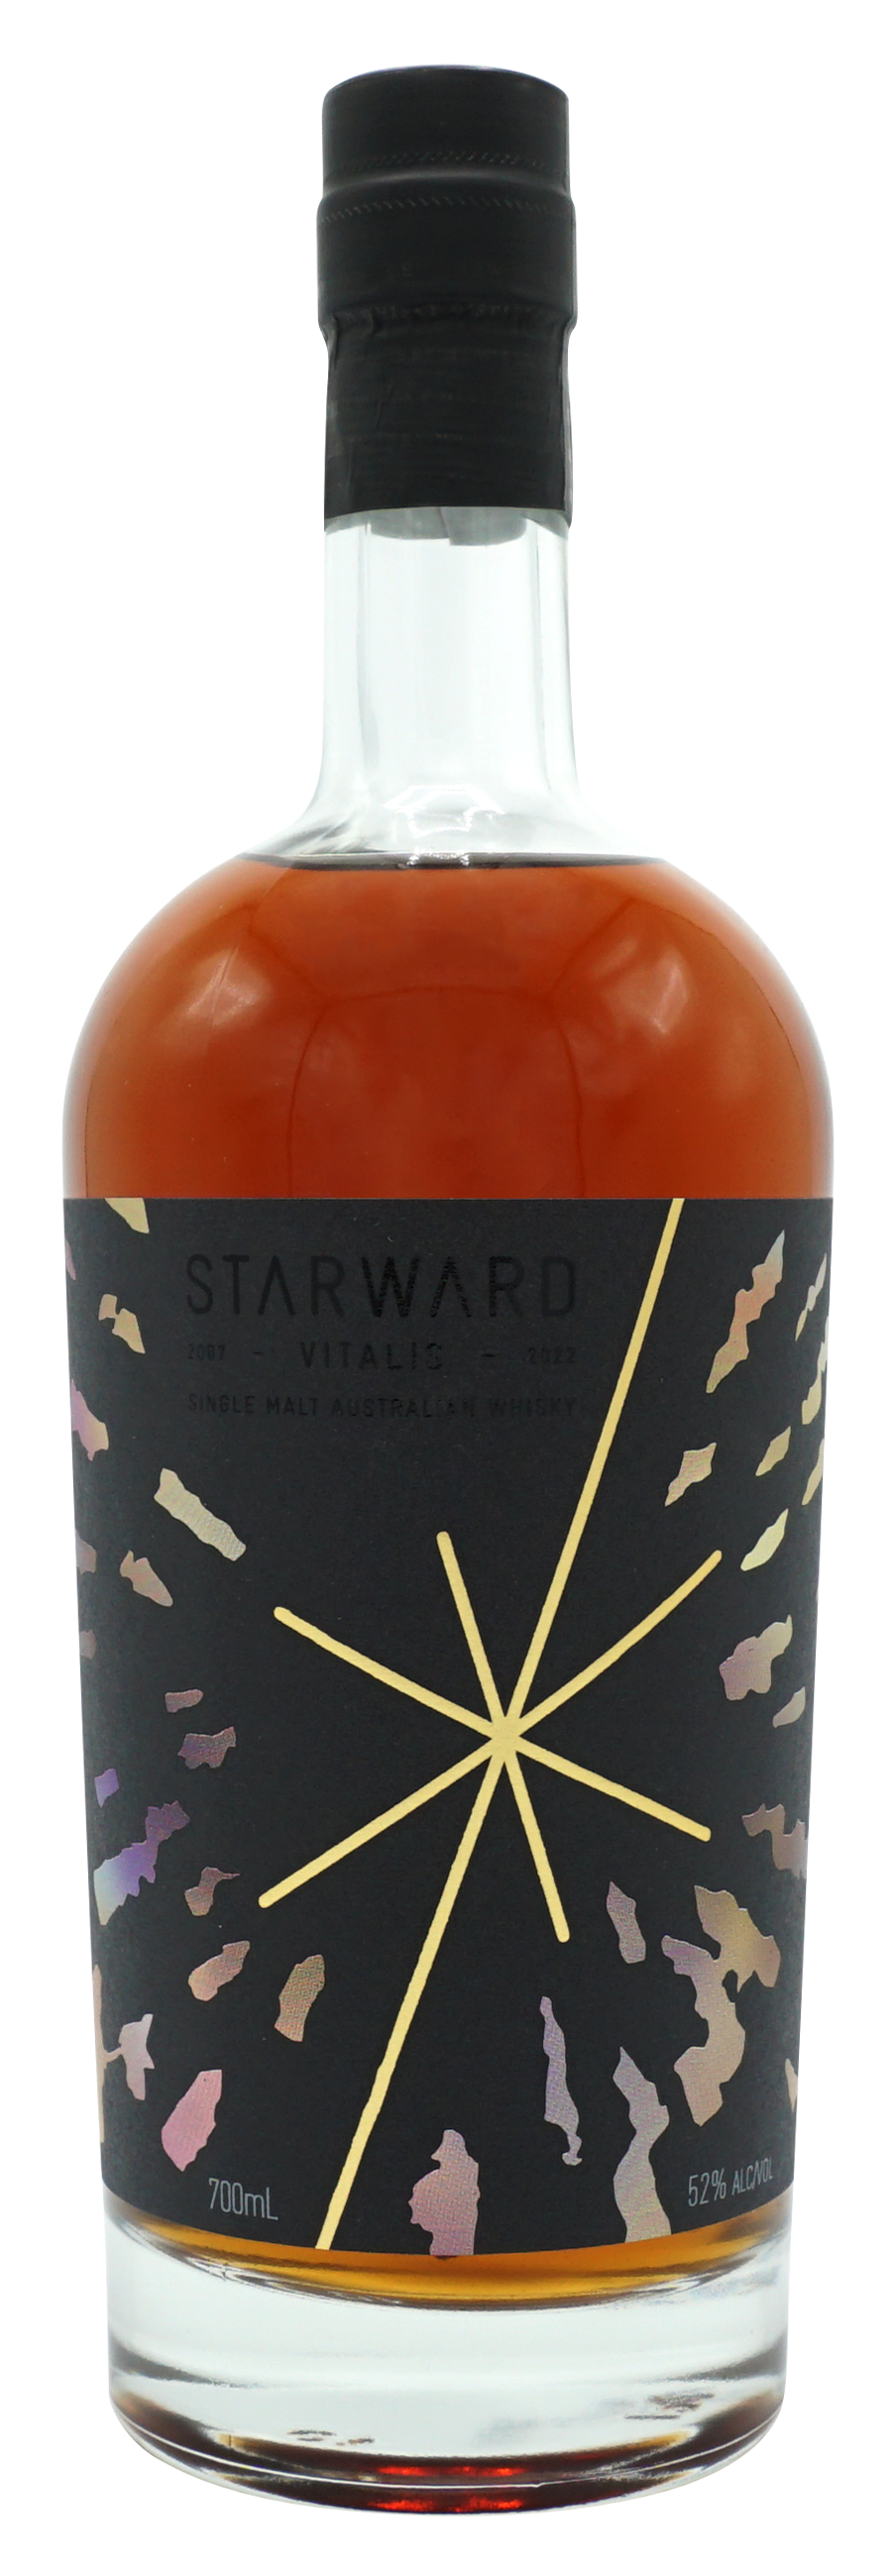 Starward Vitalis Single Malt 70cl 52